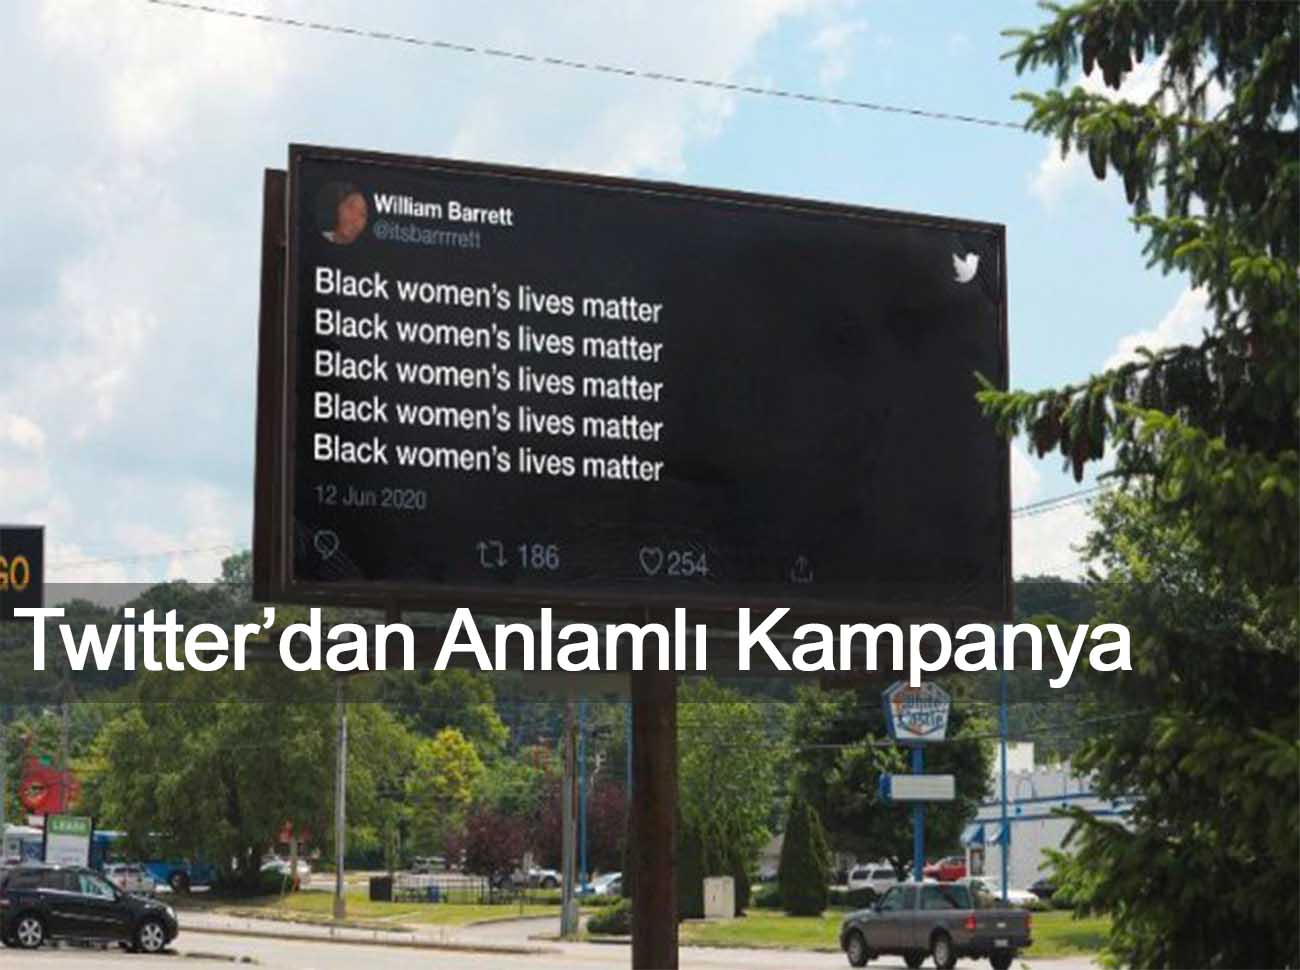 Irkçılık Karşıtı Tweetler Reklam Panolarında